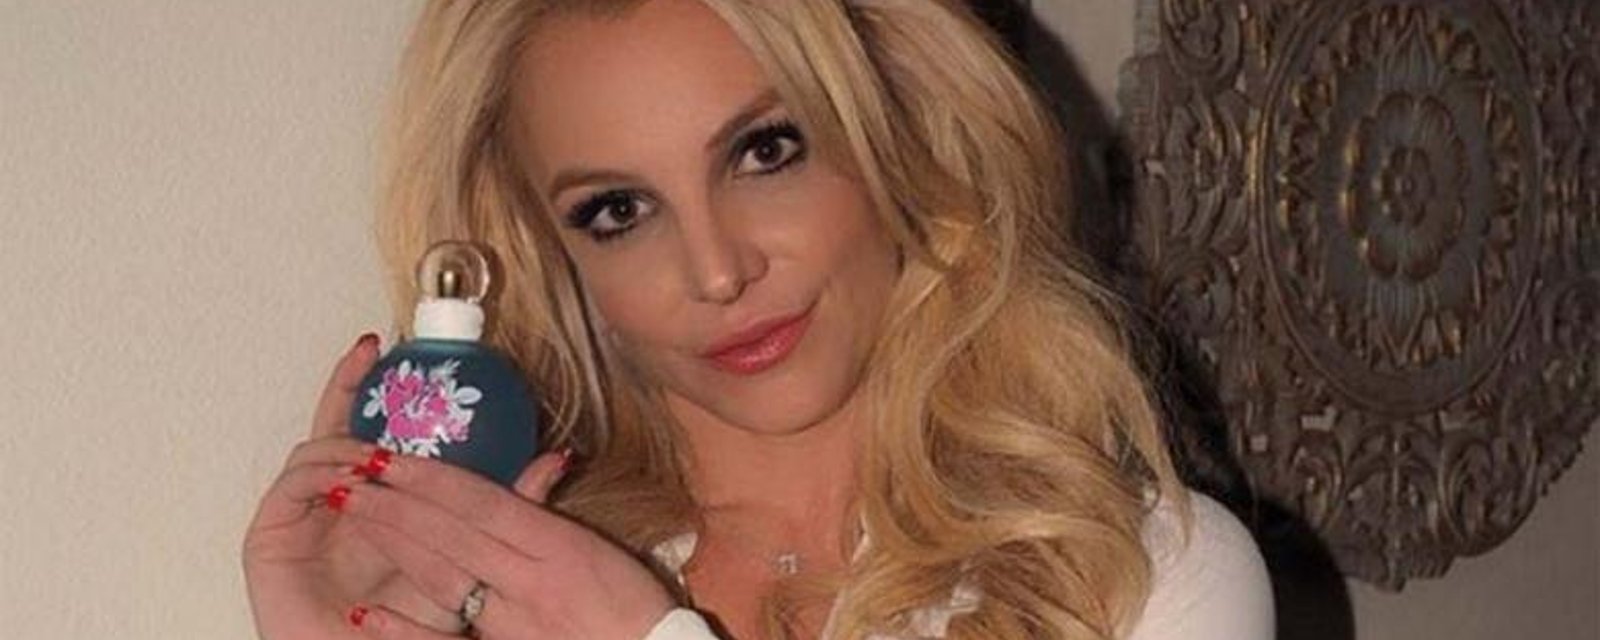 Britney Spears est MÉCONNAISSABLE sur ces photos... Trop de Photoshop?